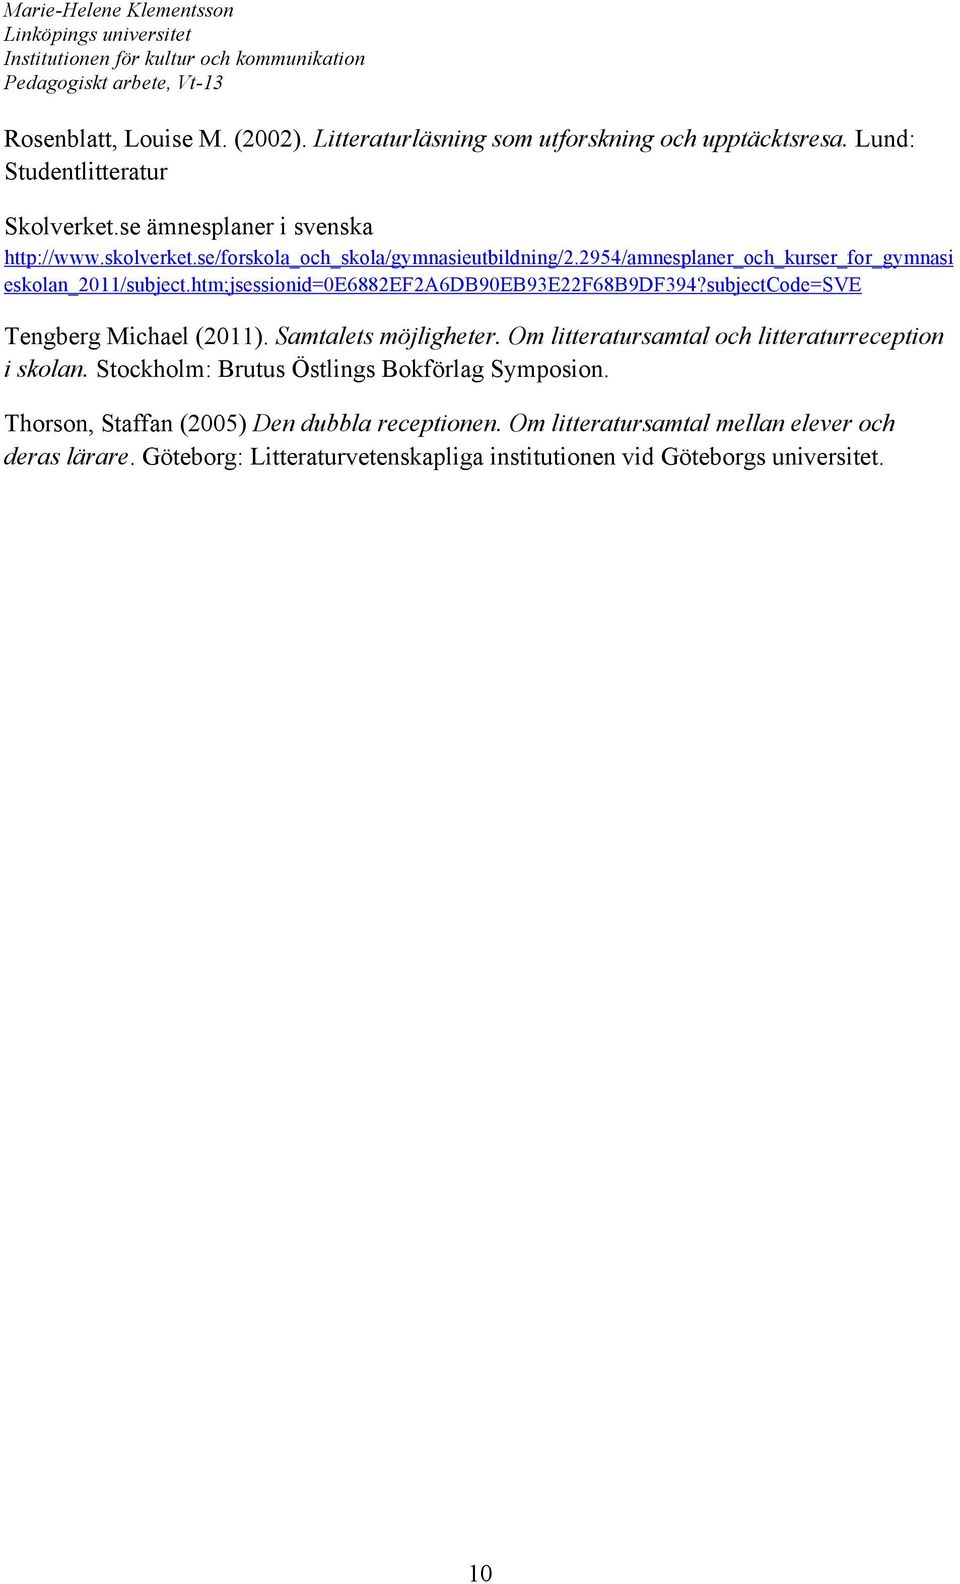 subjectcode=sve Tengberg Michael (2011). Samtalets möjligheter. Om litteratursamtal och litteraturreception i skolan. Stockholm: Brutus Östlings Bokförlag Symposion.